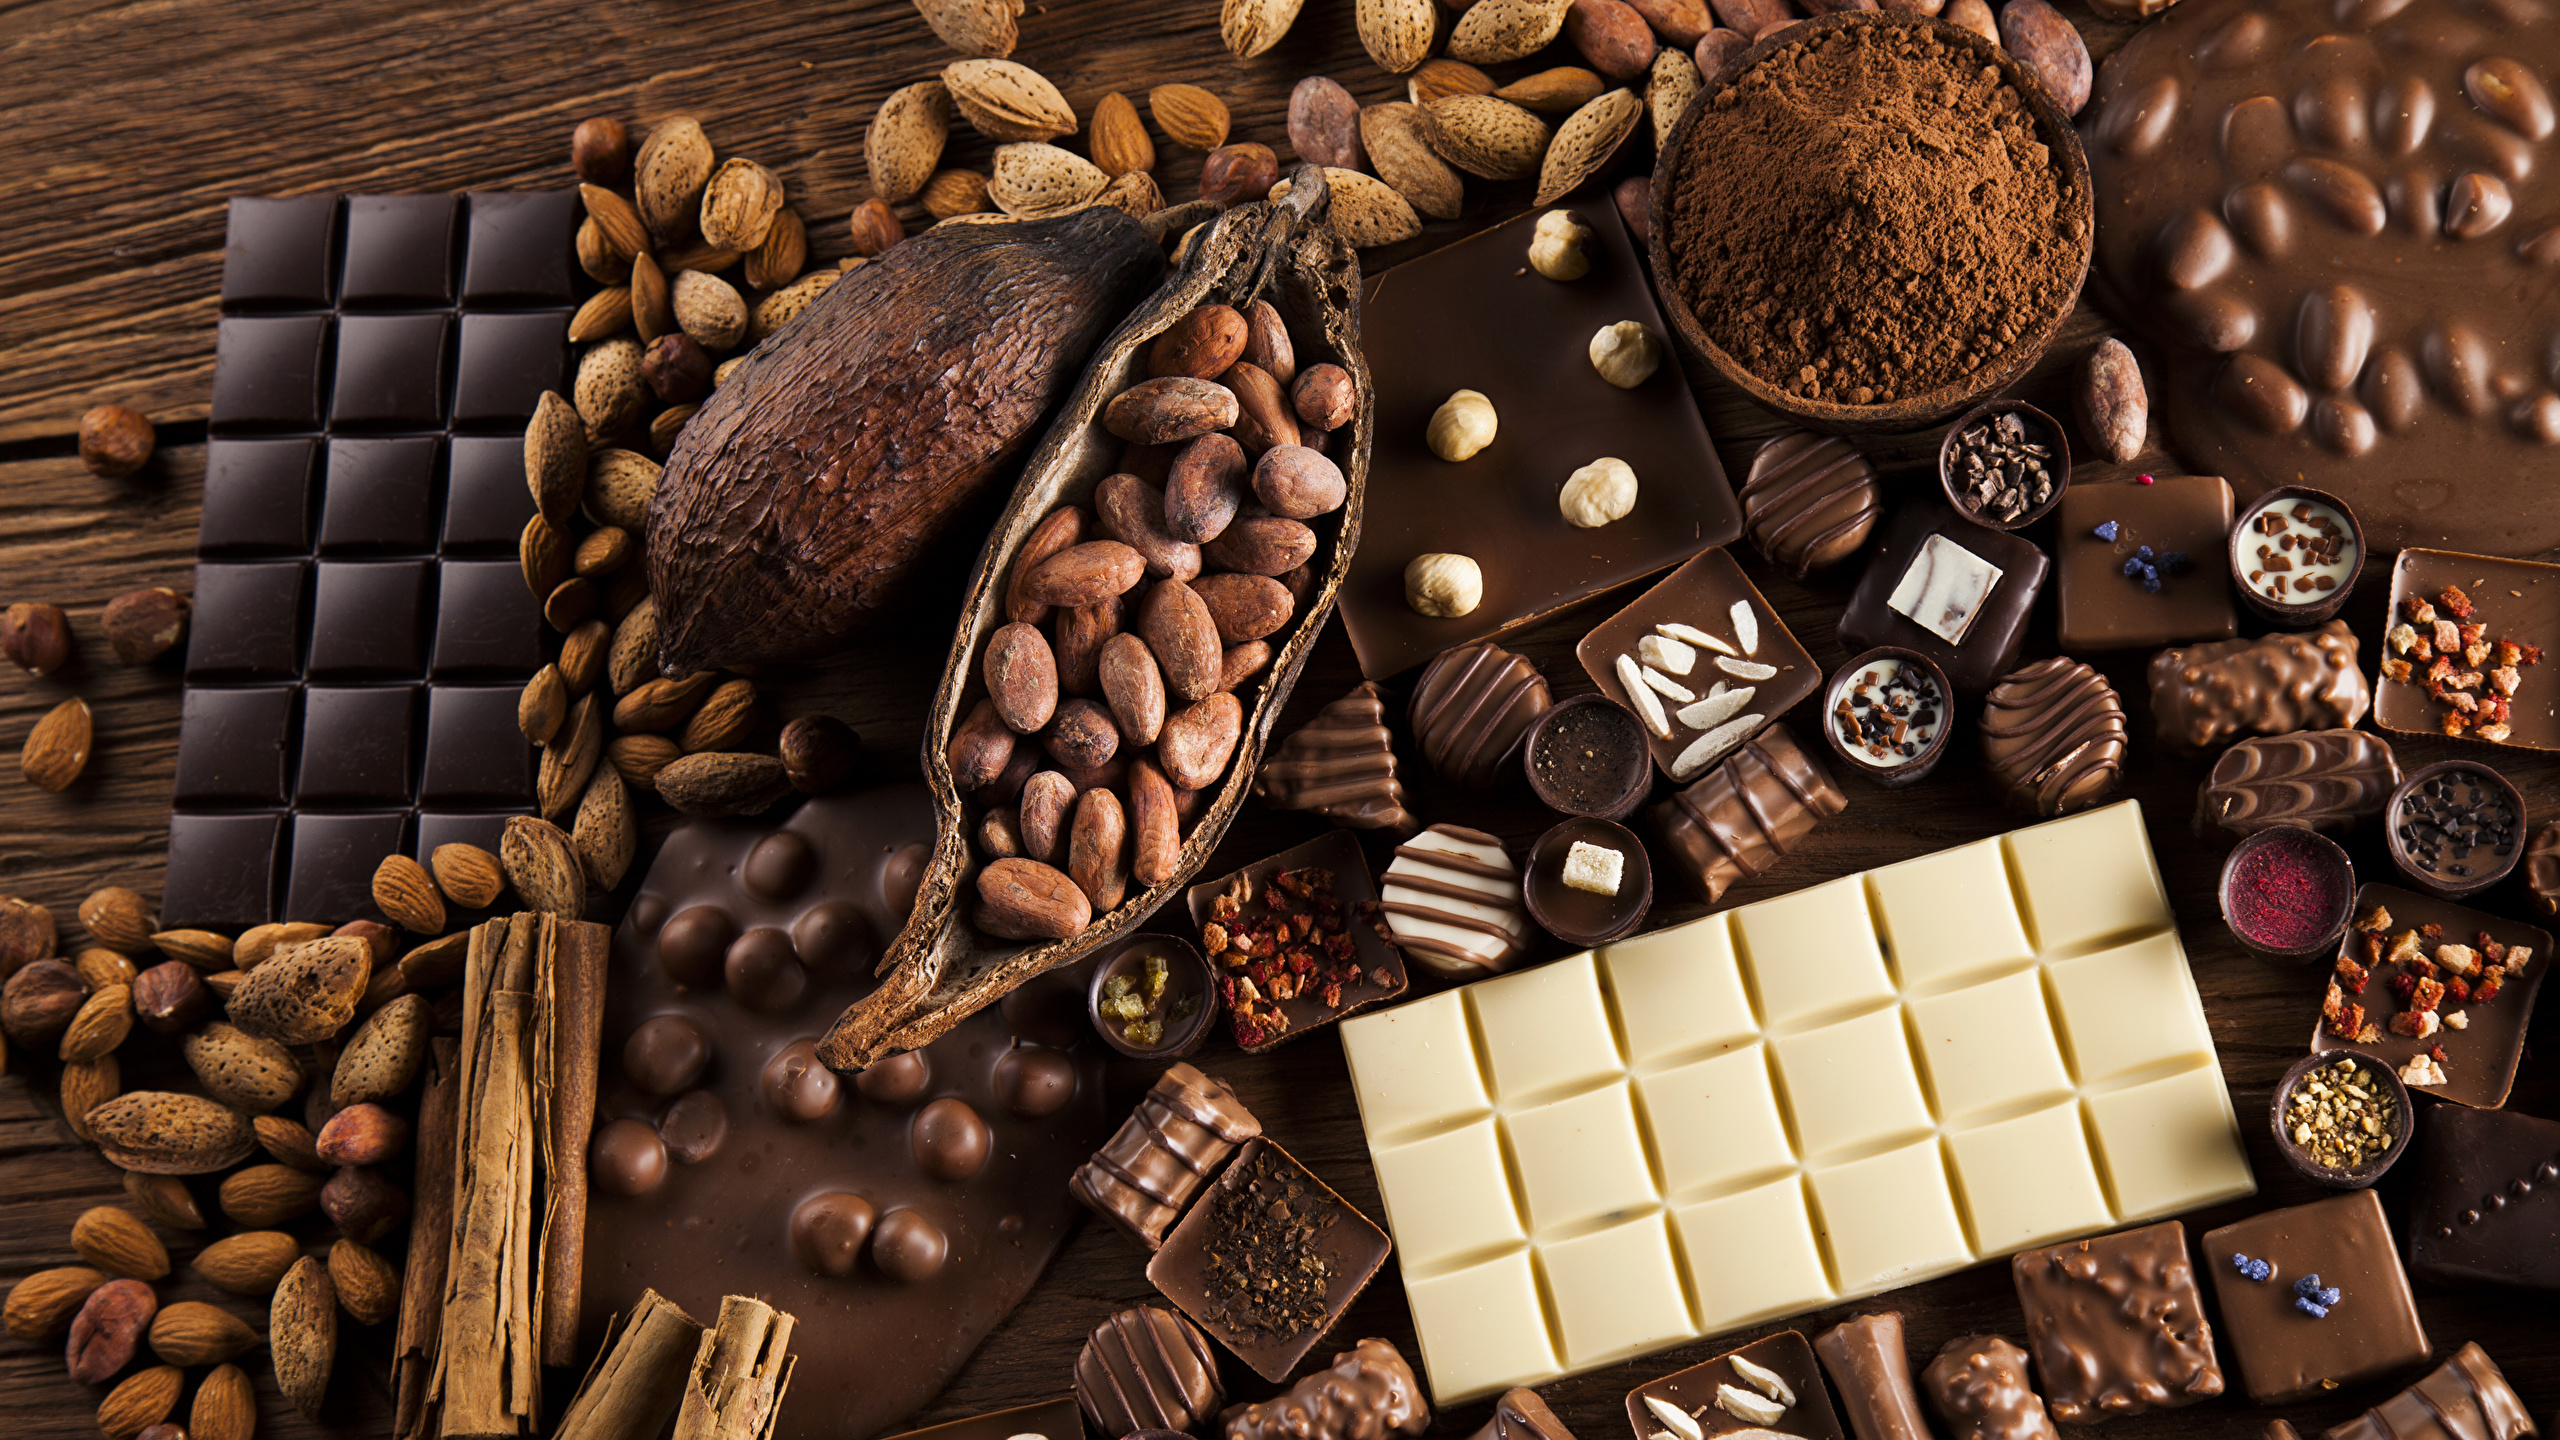 壁紙 2560x1440 菓子 チョコレート ナッツ キャンディ チョコレートバー ココアパウダー 食品 ダウンロード 写真